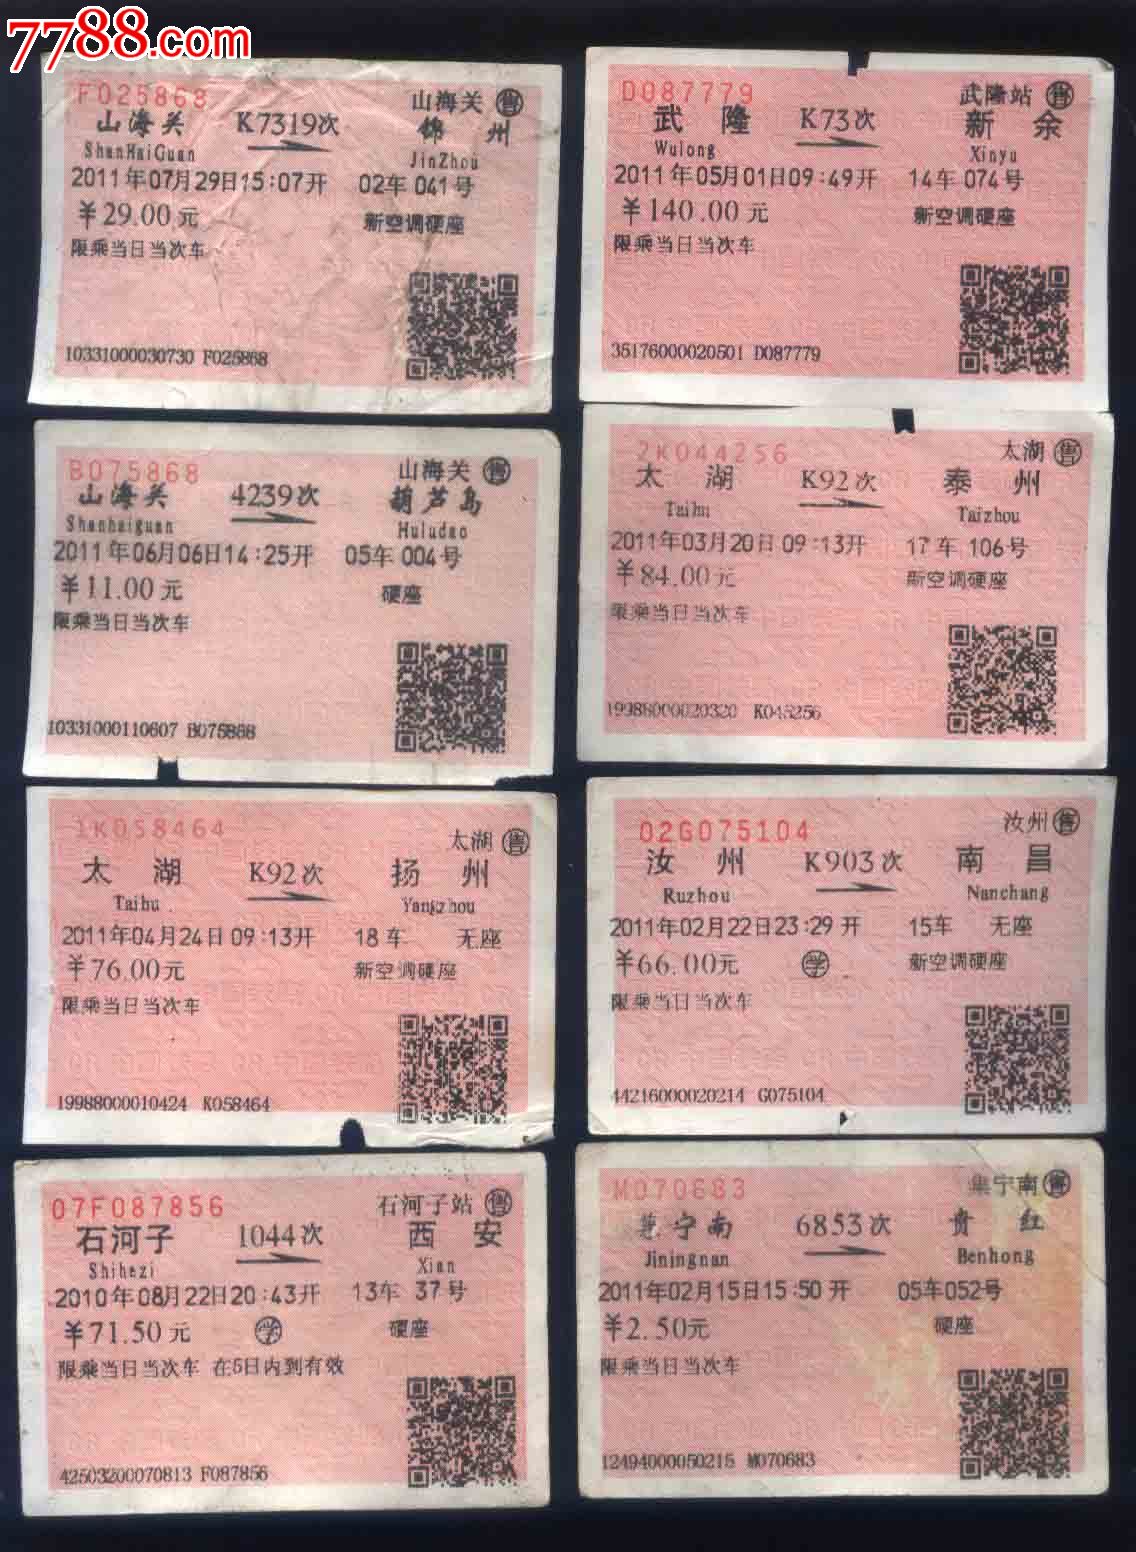 智行火车票12306高铁免费下载_华为应用市场|智行火车票12306高铁安卓版(4.1.6)下载